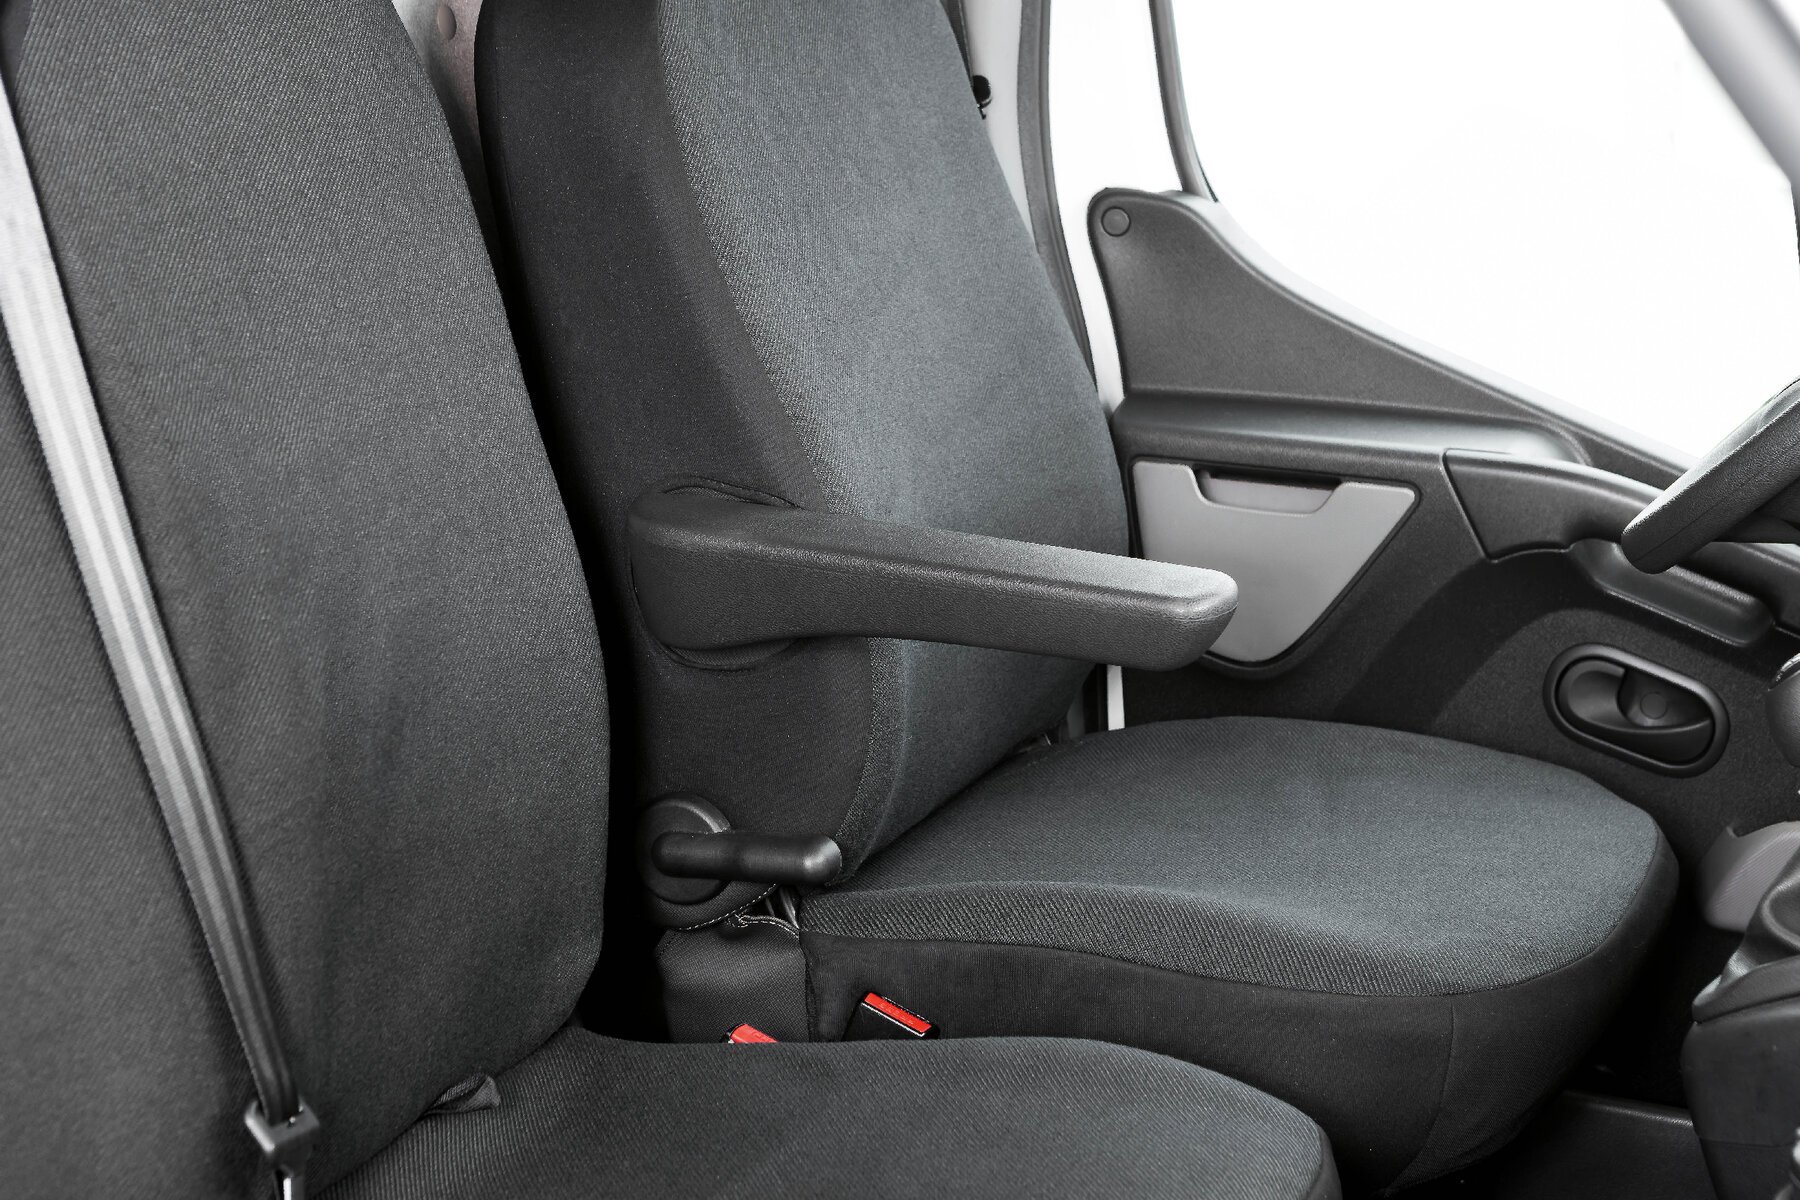 Transporter Coprisedili in tessuto per Opel Movano, Renault Master, Nissan Interstar, sedile singolo e doppio